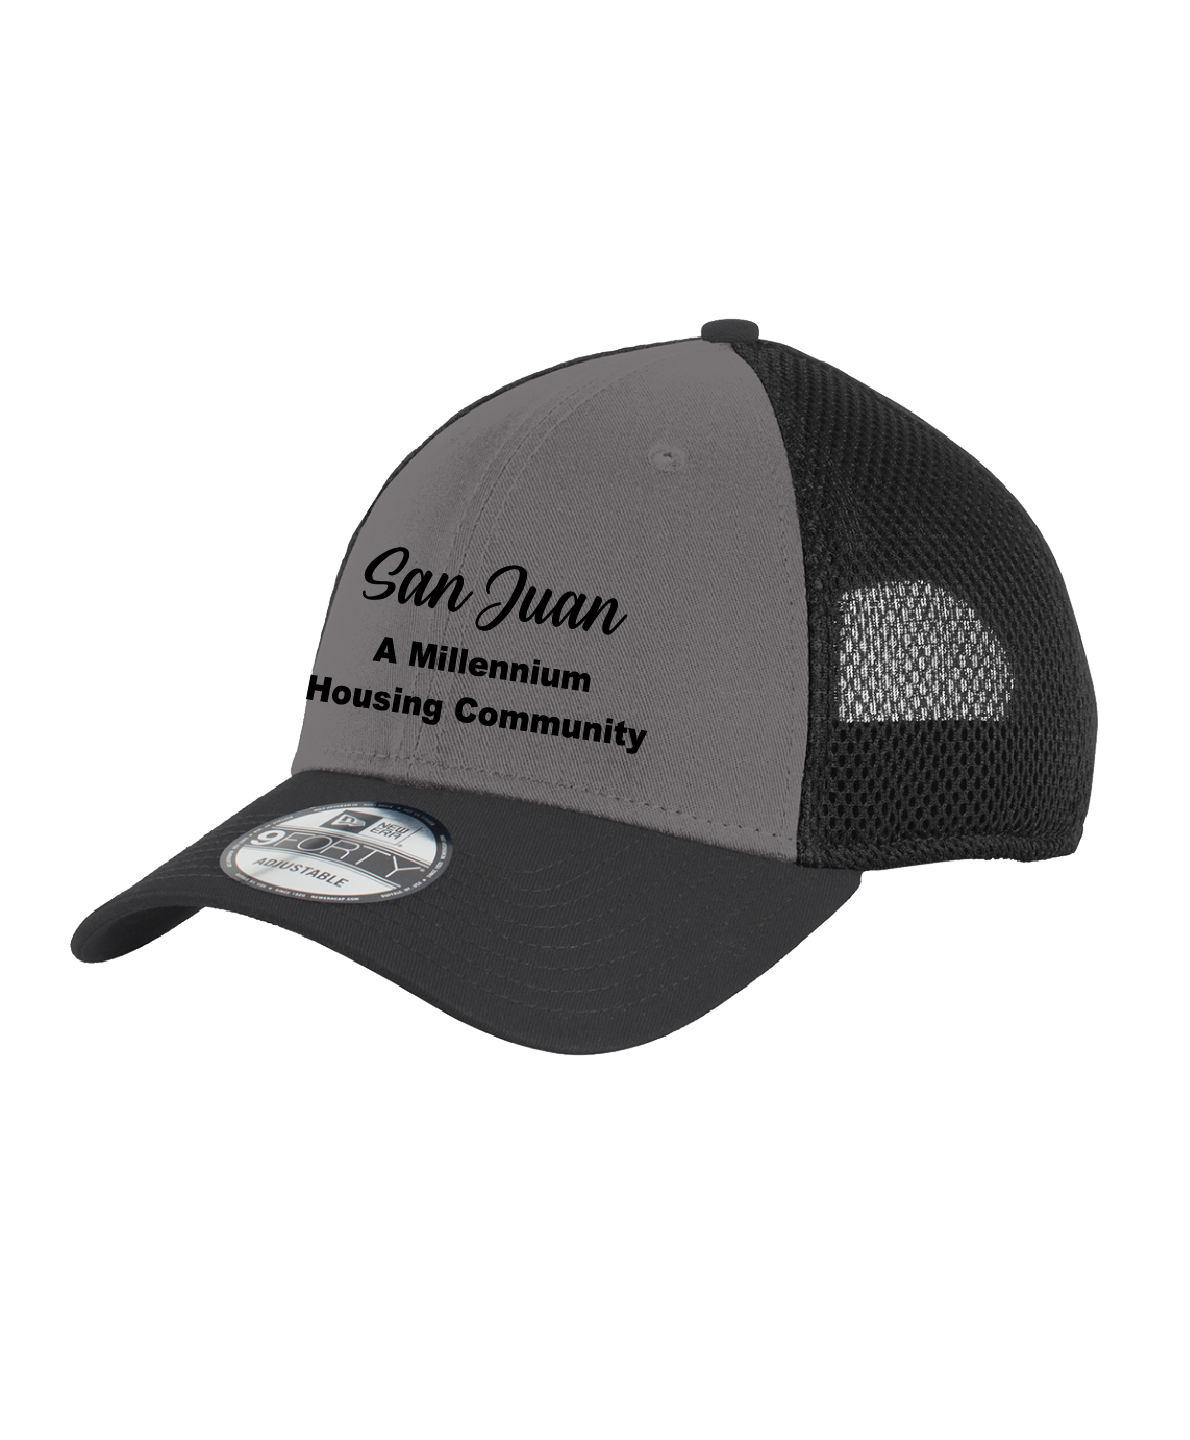 San Juan - New Era® - Snapback Contrast Front Mesh Cap